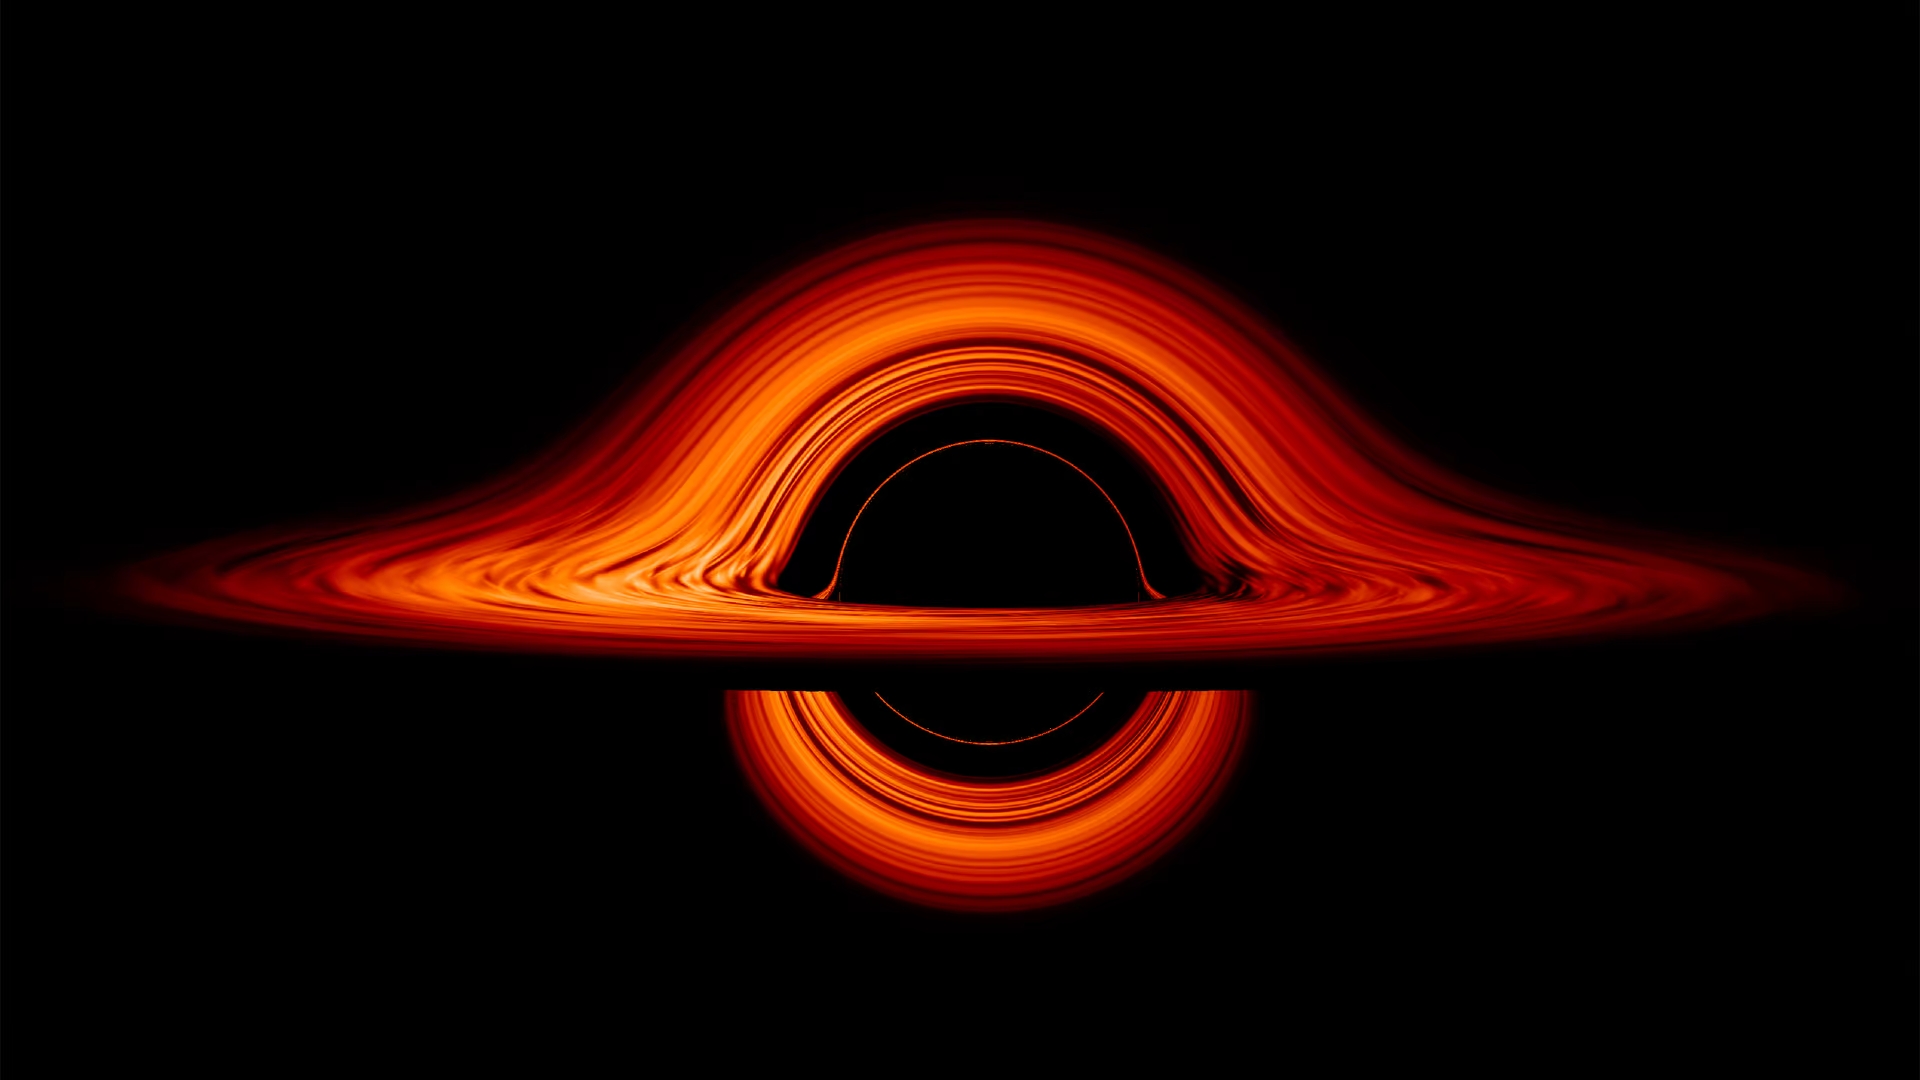 Les trous noirs contiennent de l'énergie sombre qui accélère l'expansion de l'univers et les singularités ne sont plus nécessaires - les scientifiques sont sur le point de faire une découverte révolutionnaire